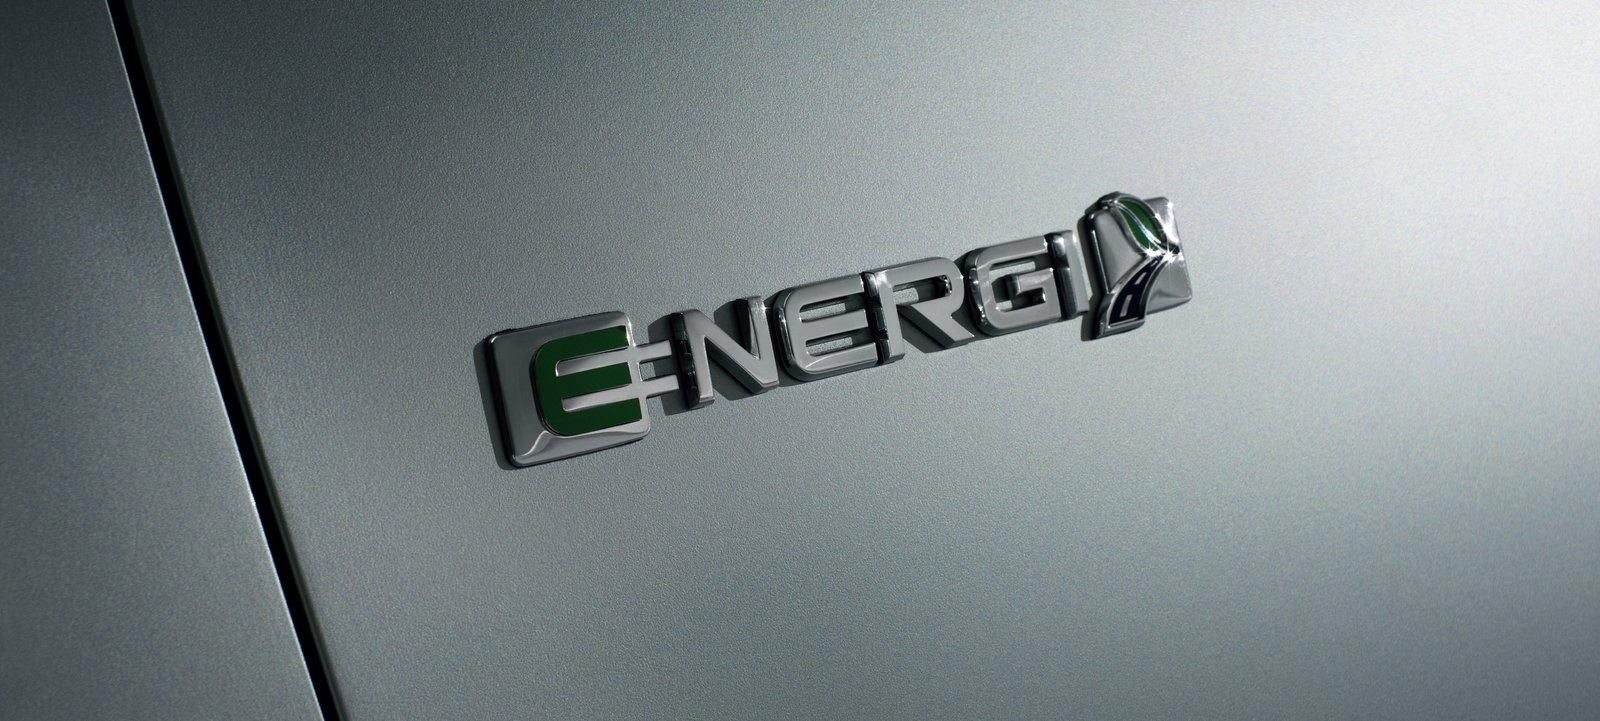 2012 Ford C-Max Energi Concept